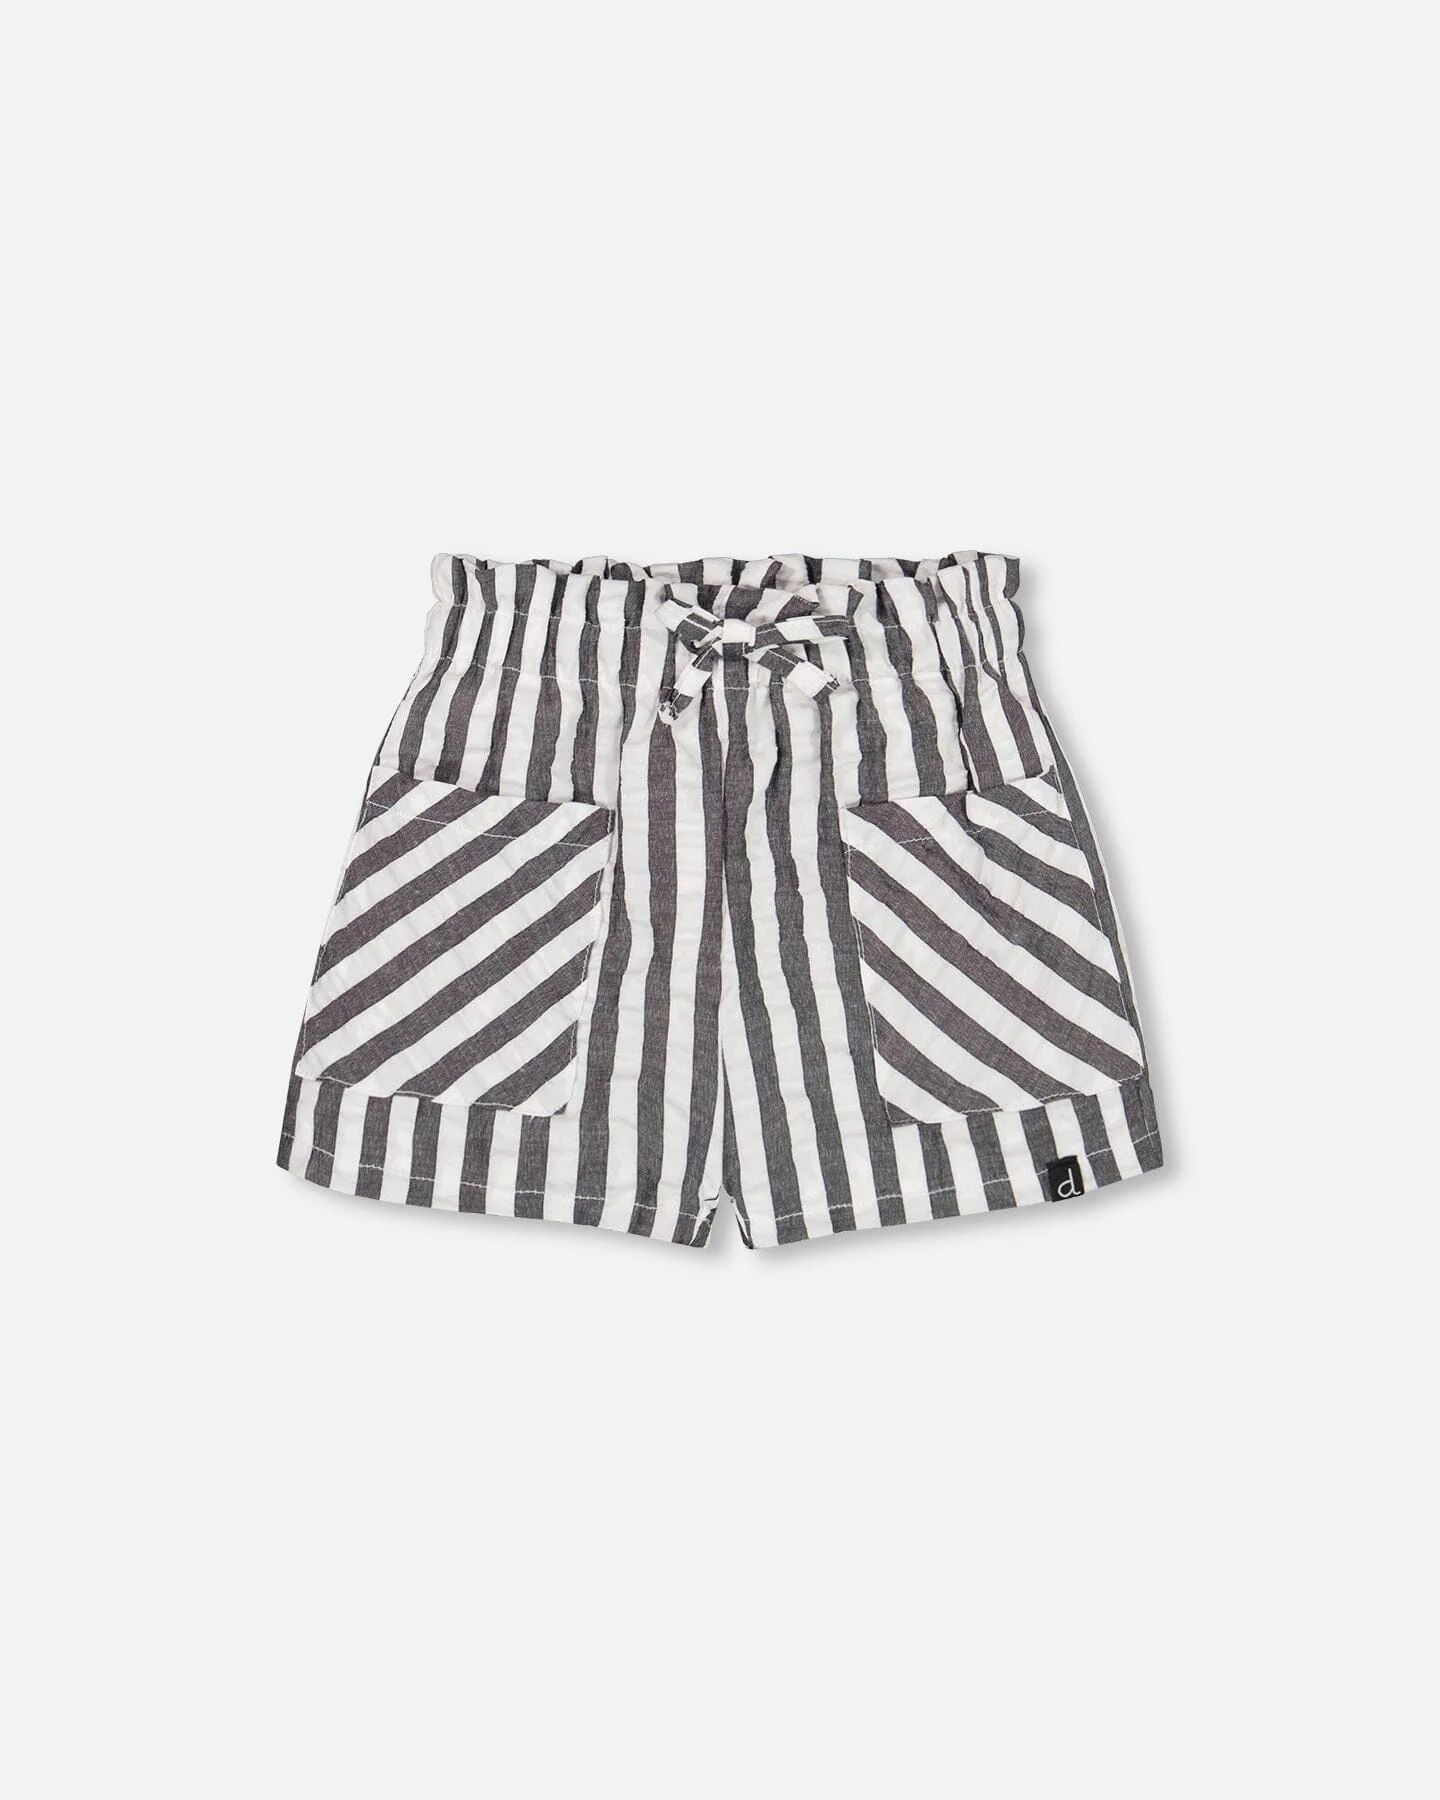 Striped Seersucker Short Black | Deux par Deux Childrens Designer Clothing